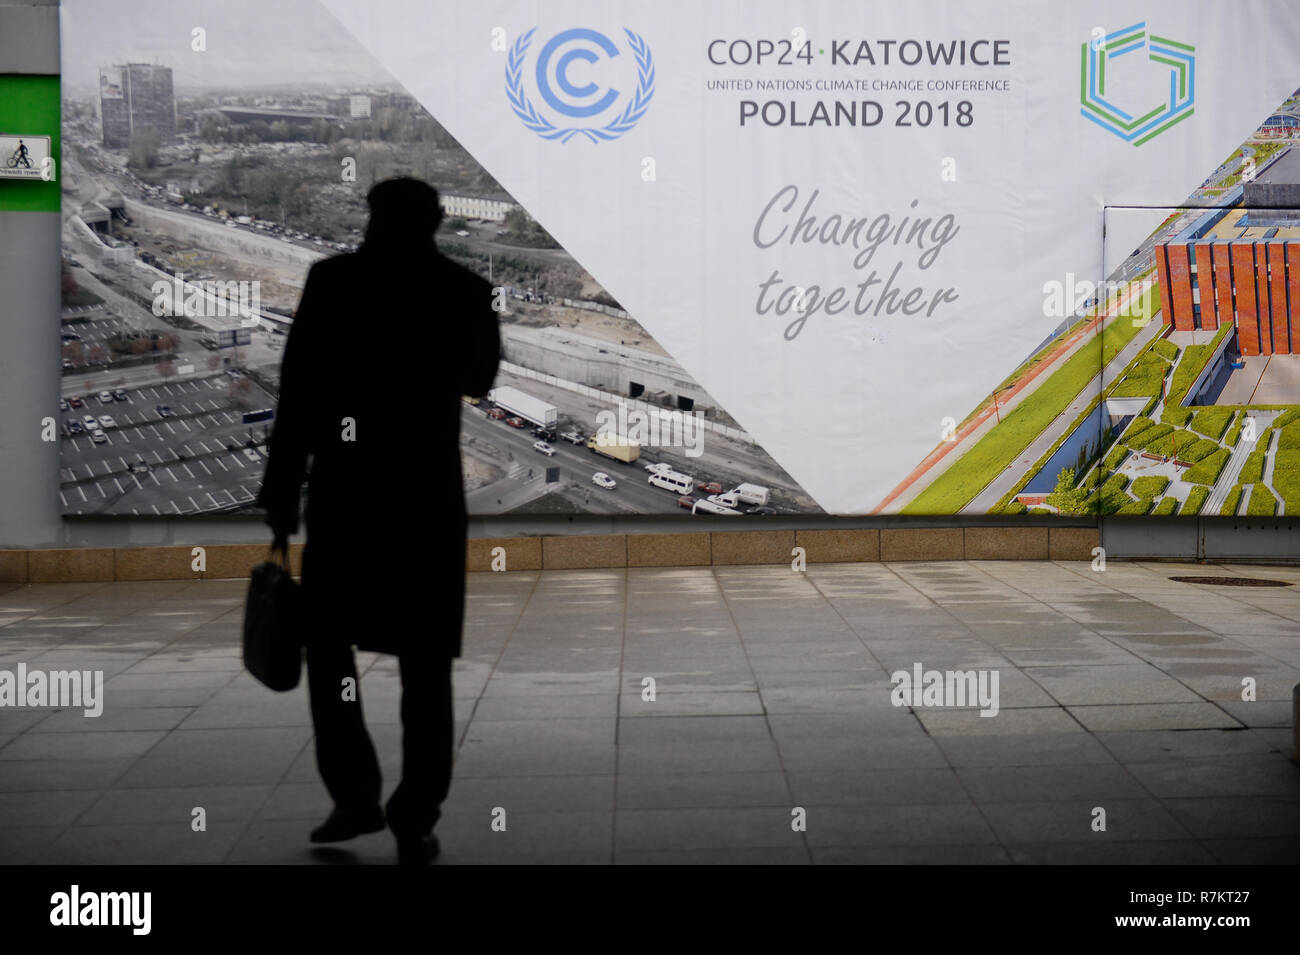 Un participant vu passant par la CDP24 annonce à côté de la salle de conférence des Nations Unies sur les changements climatiques (COP24). 2018 La conférence des Nations Unies sur les changements climatiques (COP24) est maintenant dans la deuxième semaine de négociations et se termine le 14 décembre à Katowice. Banque D'Images